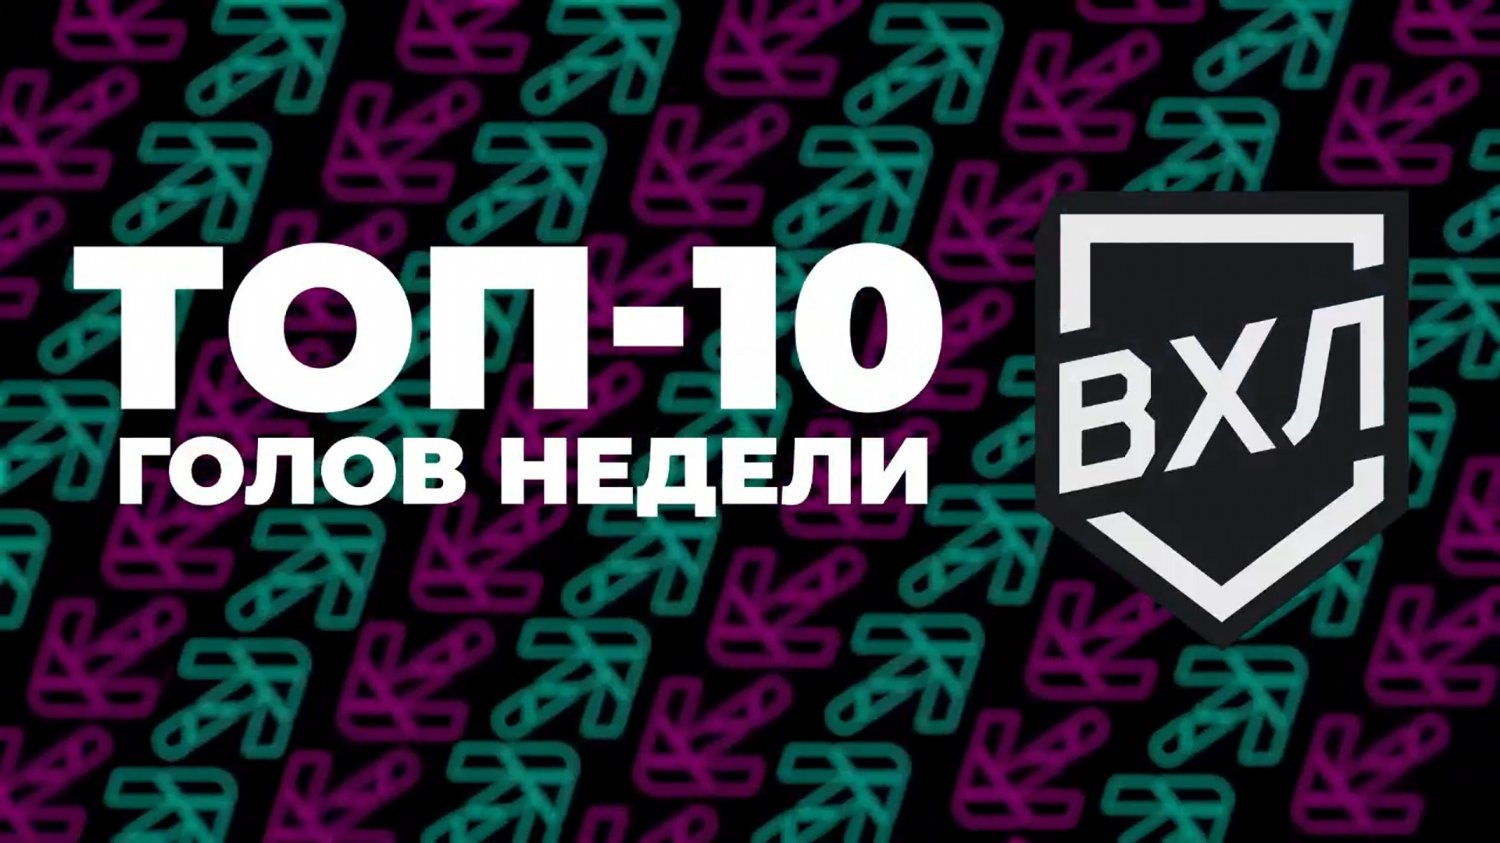 Шайбы Стрельцова и Корбита - в ТОП-10 недели ВХЛ